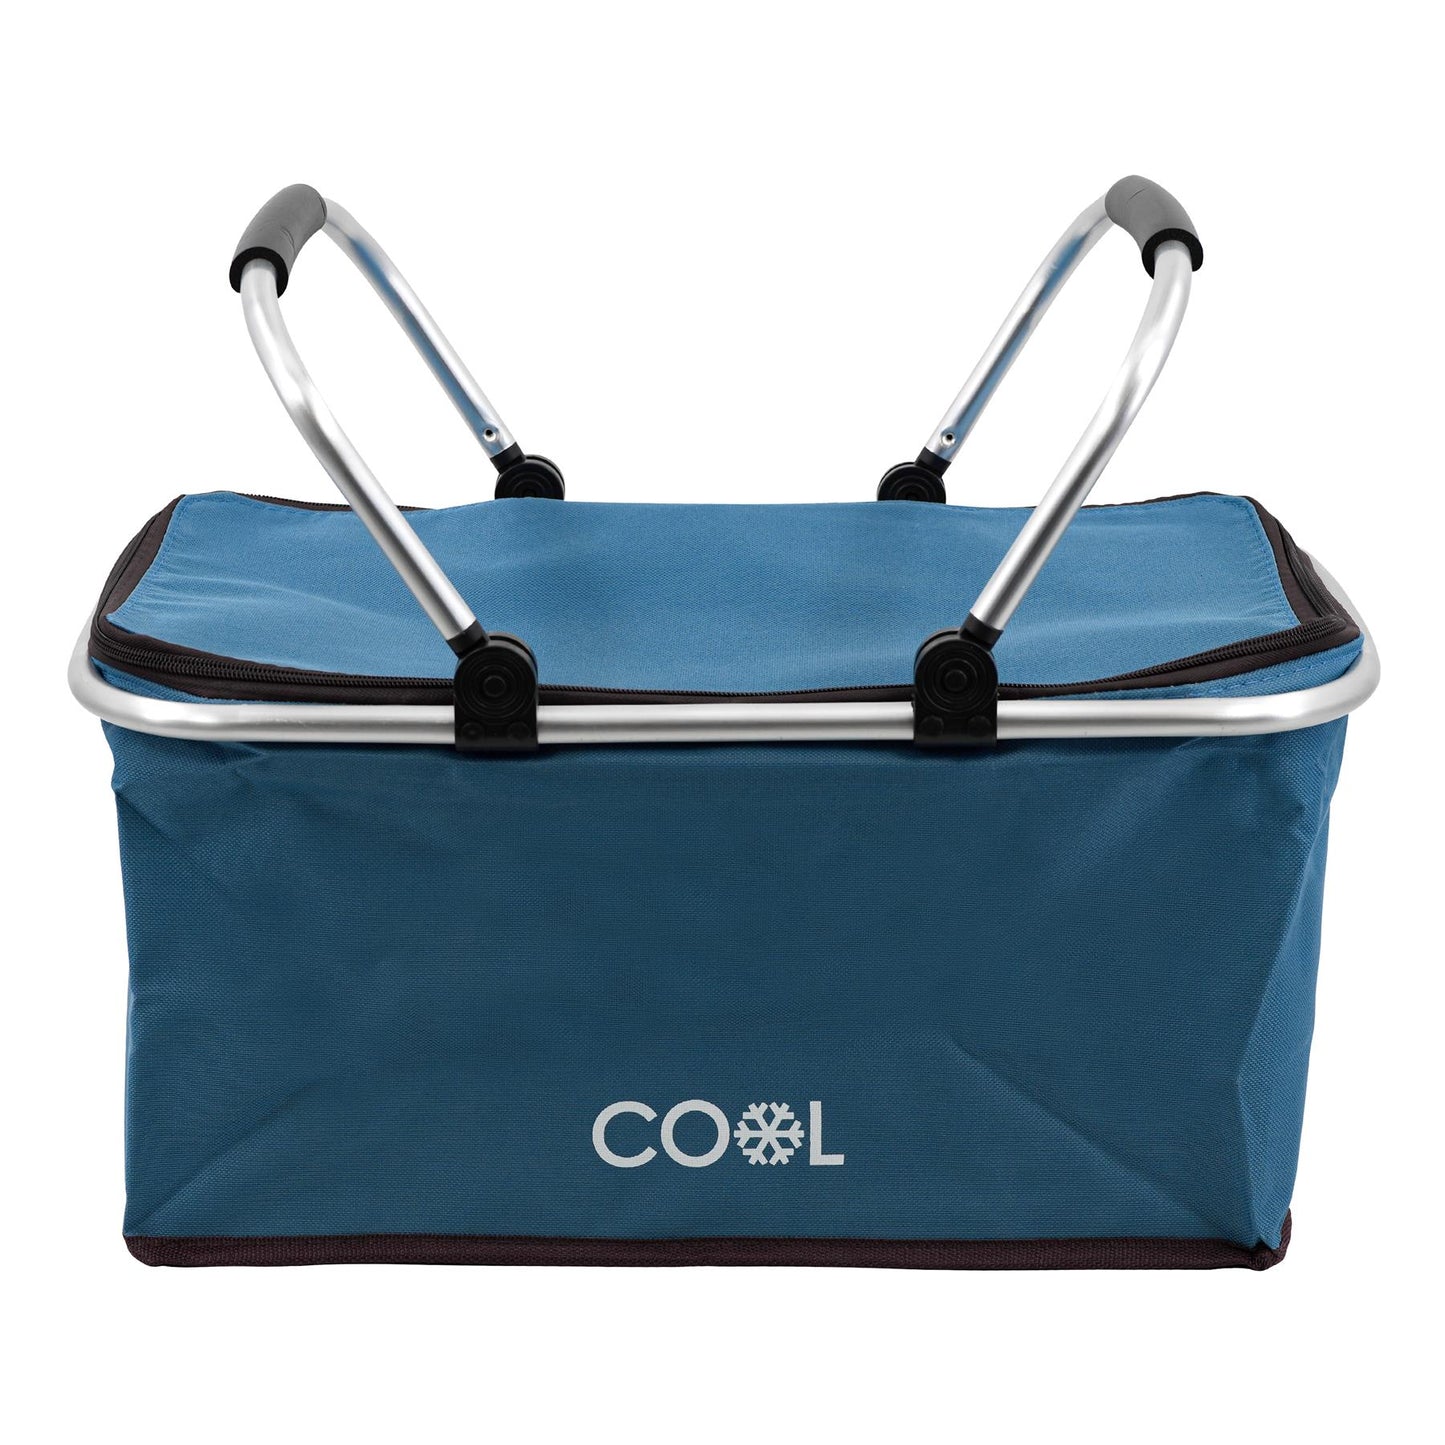 Navy Cooler Basket Bag by Geezy - UKBuyZone